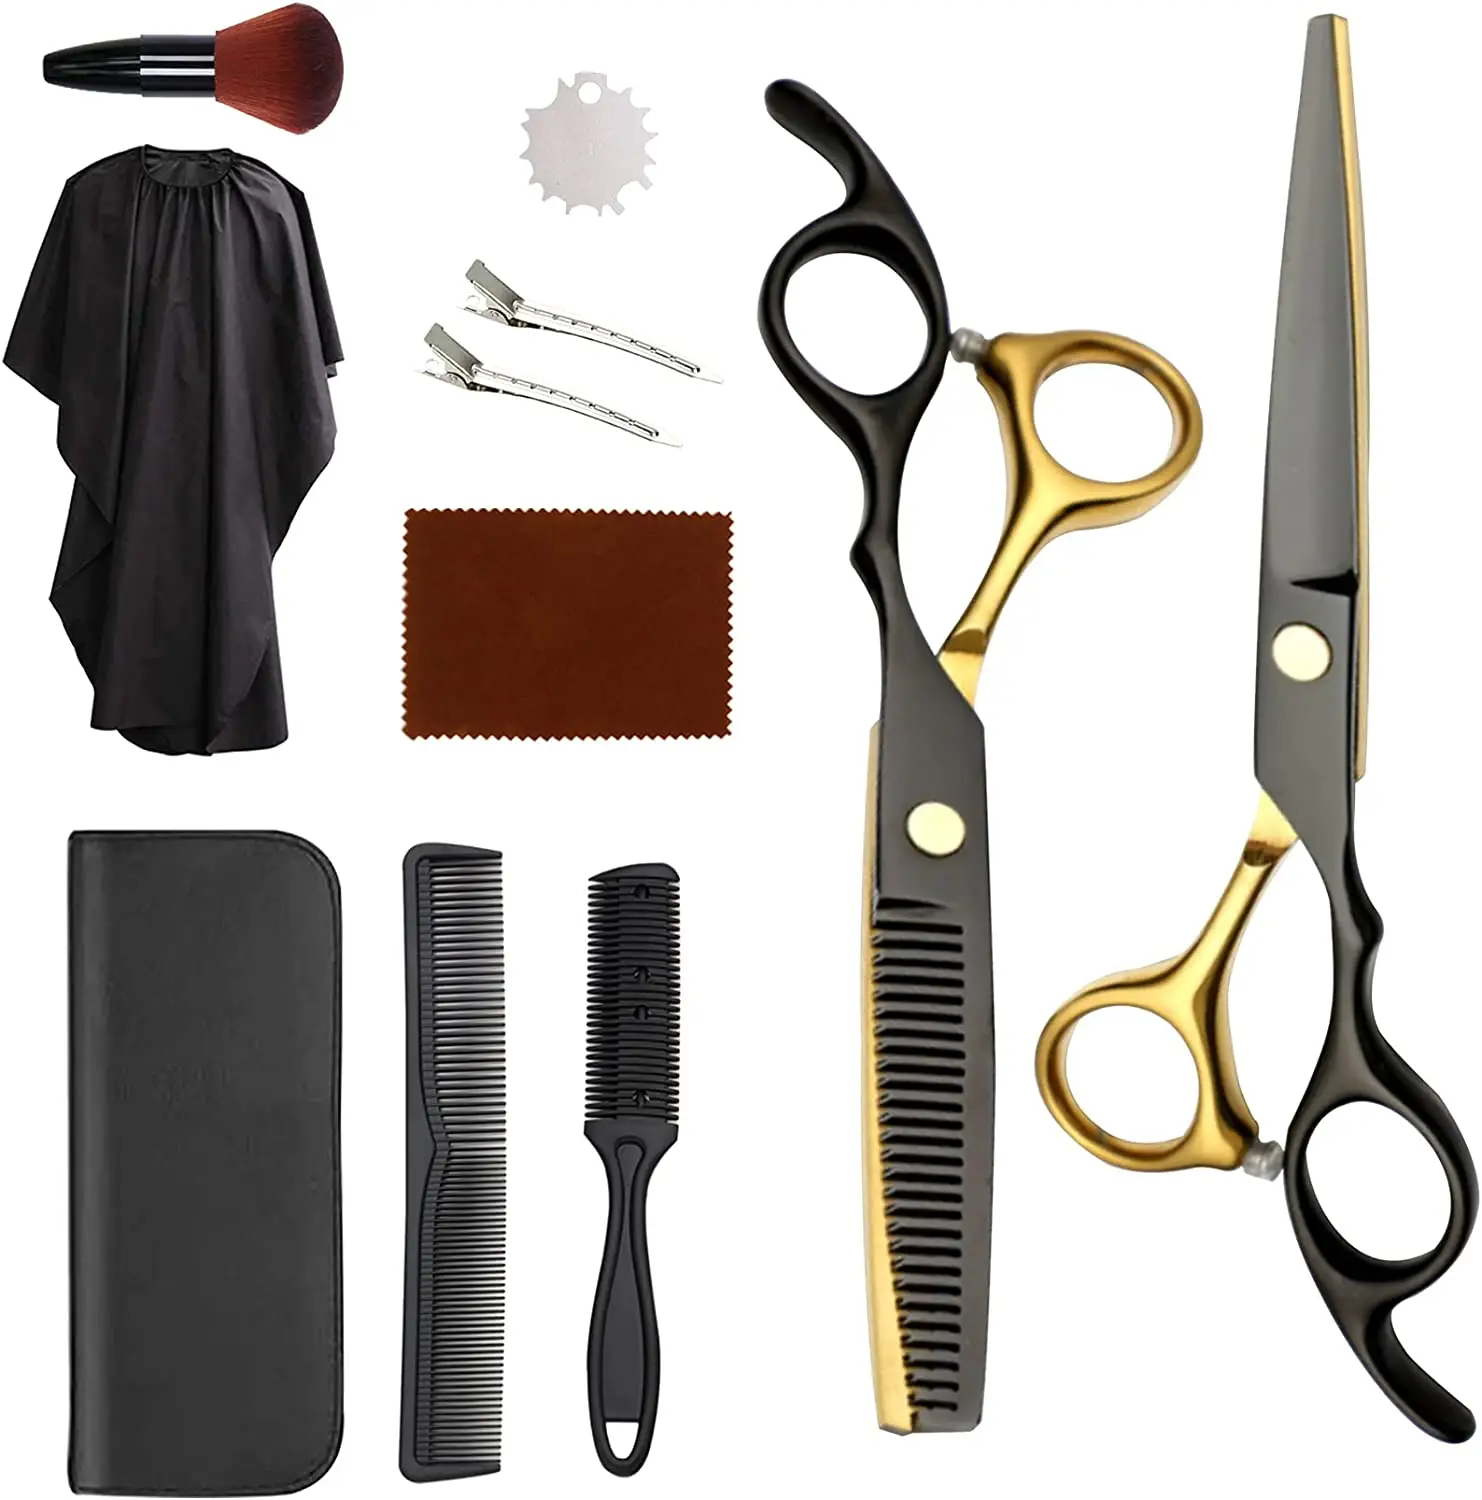 Gunting pemotong rambut profesional, Kit pemotong rambut dengan gunting pemotong rambut untuk tukang cukur, Salon, rumah